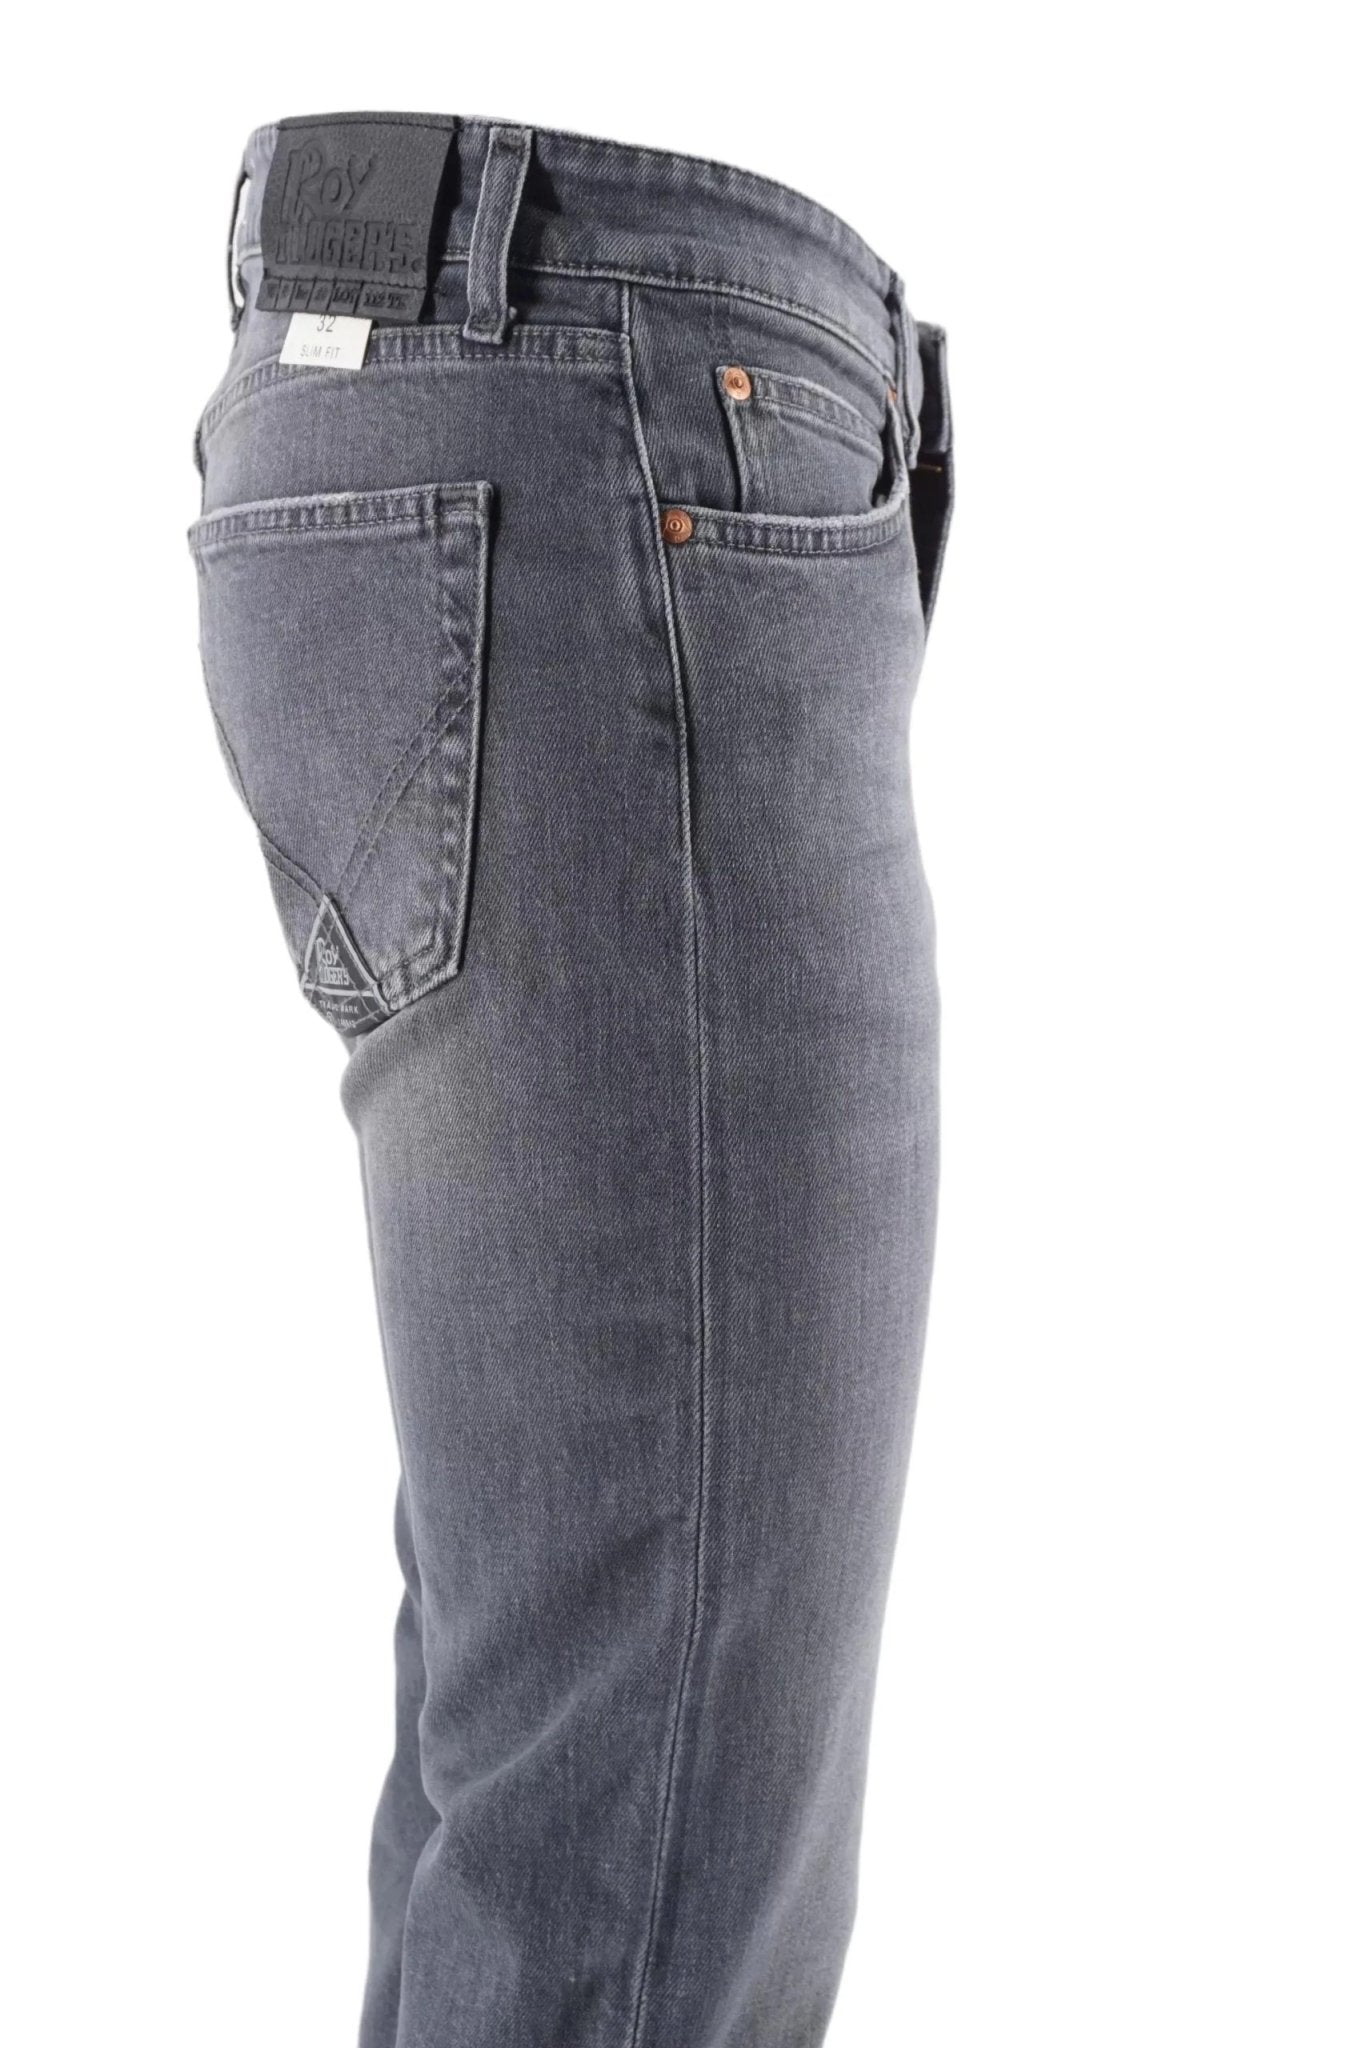 Roy Roger's Gray Cotton Jeans & Pant - Fizigo